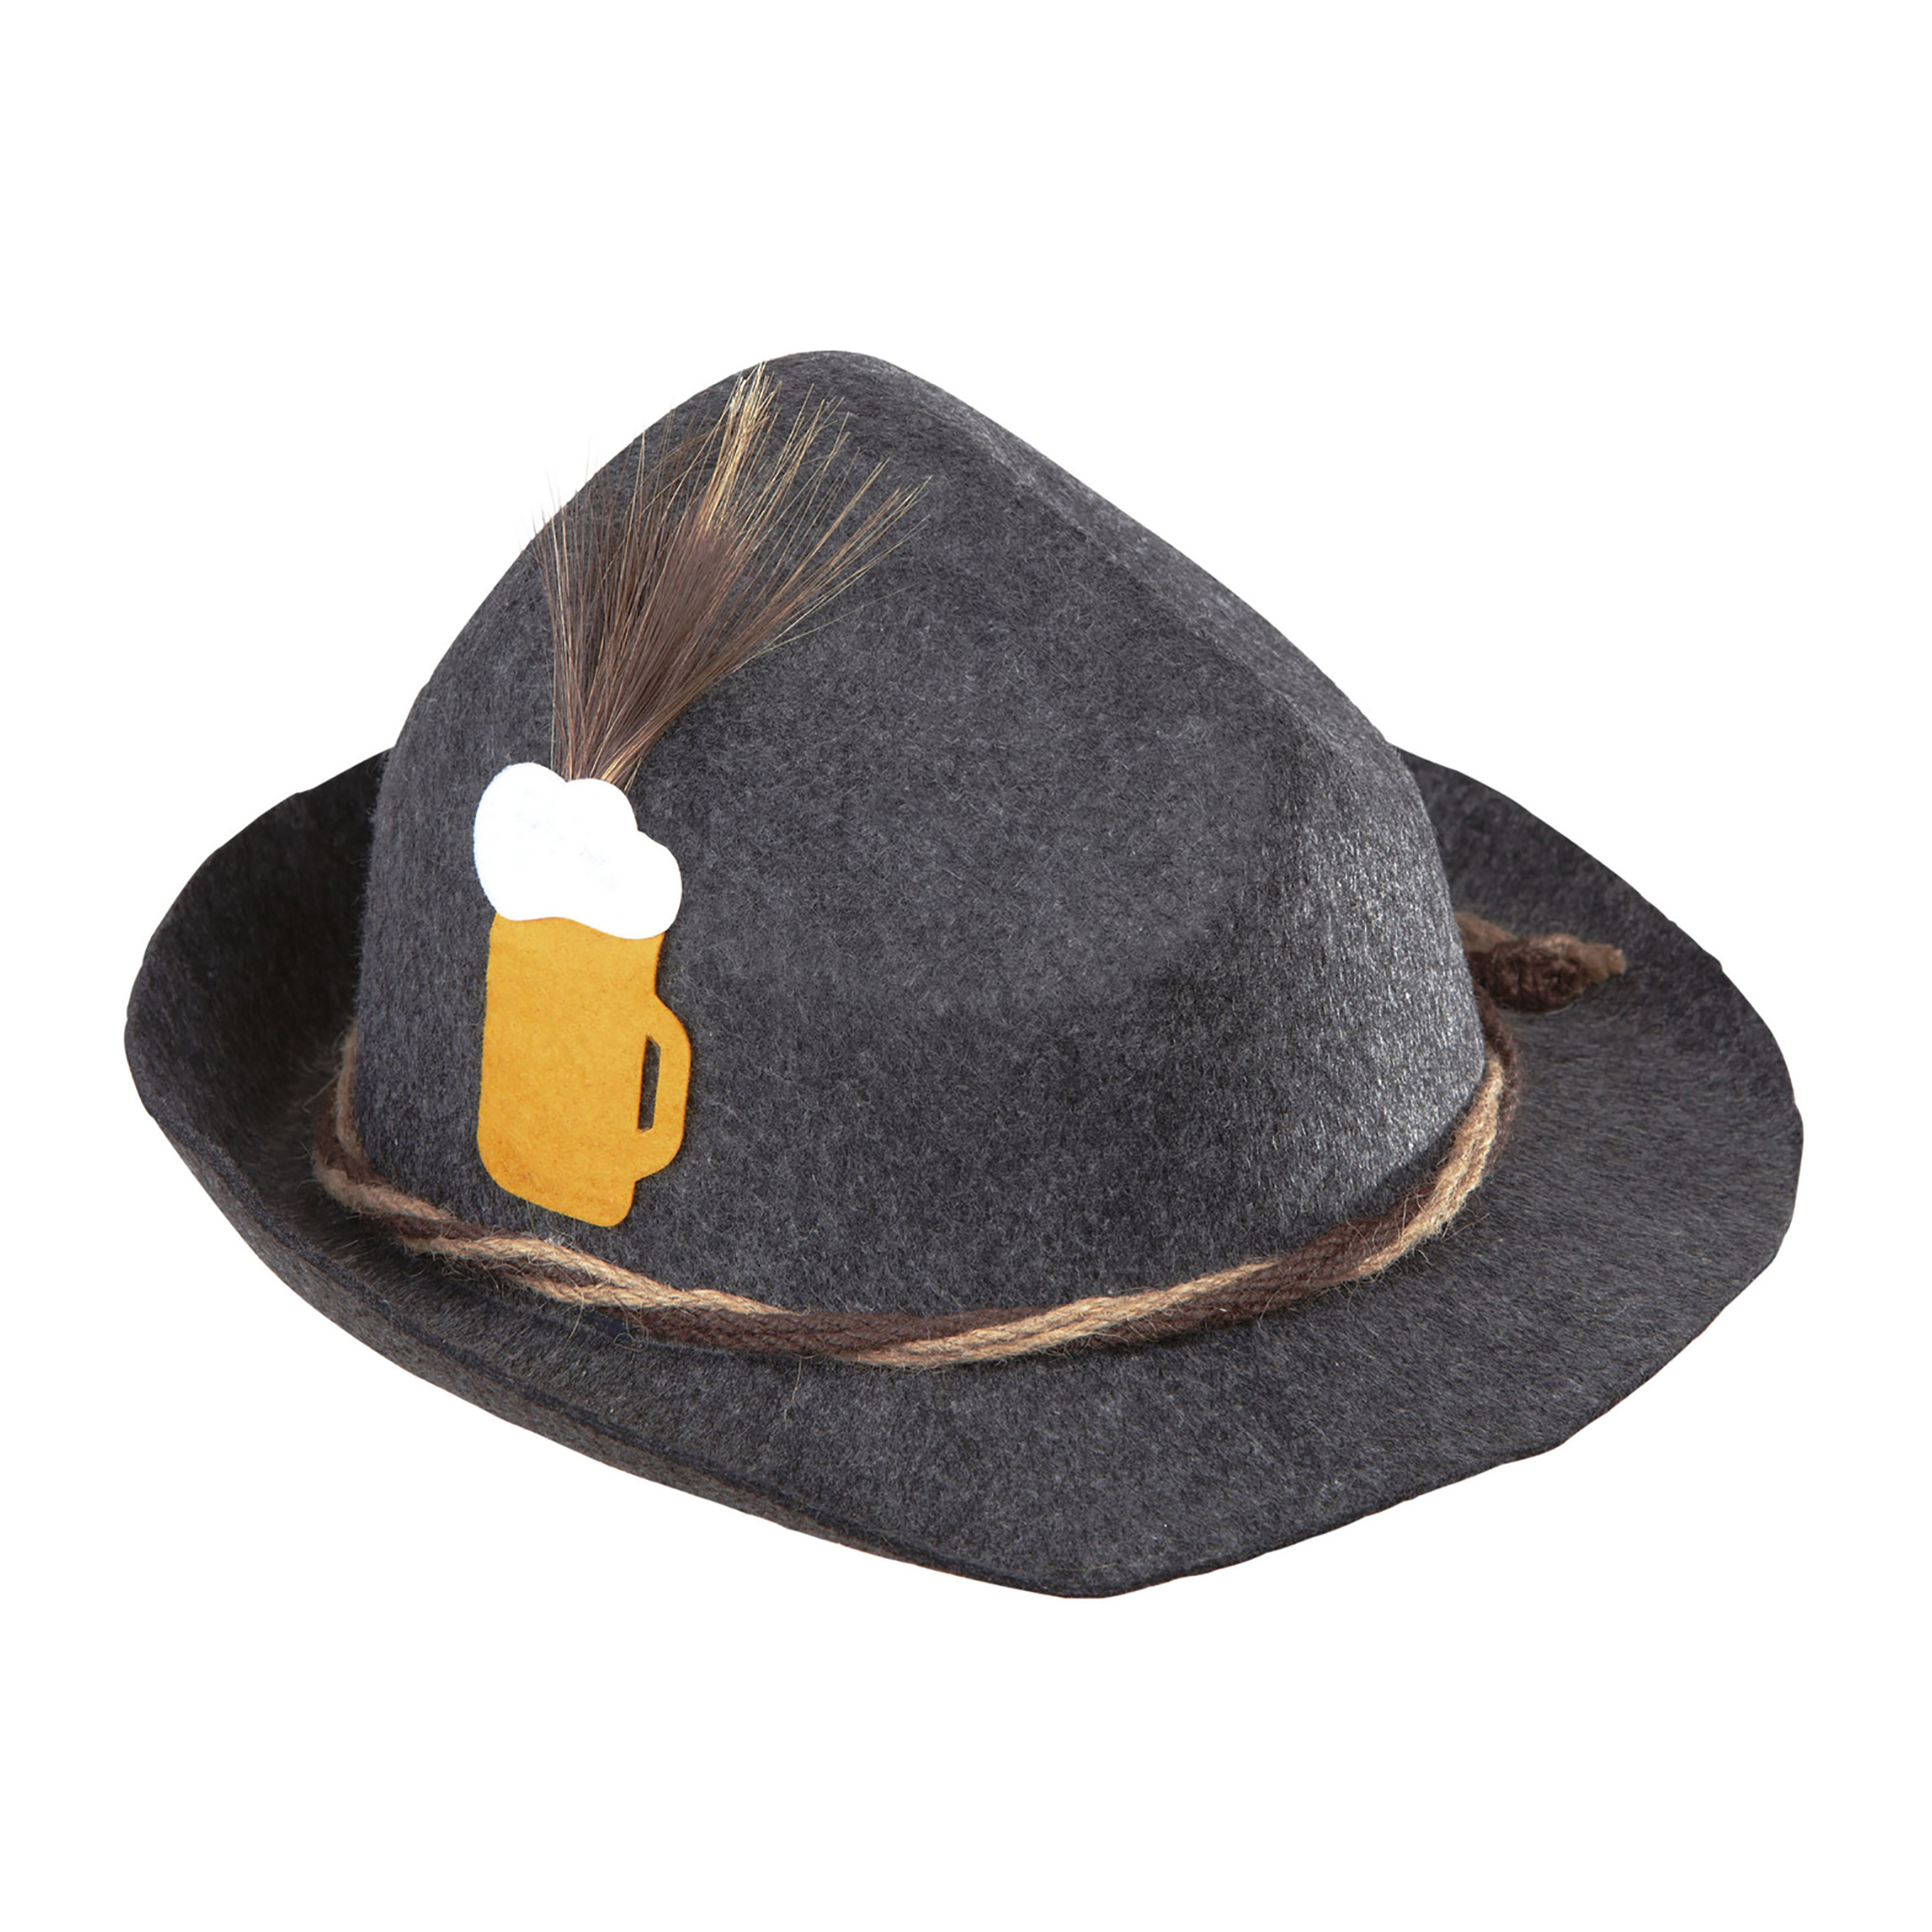 Tiroler hoed vilt luxe uitvoering